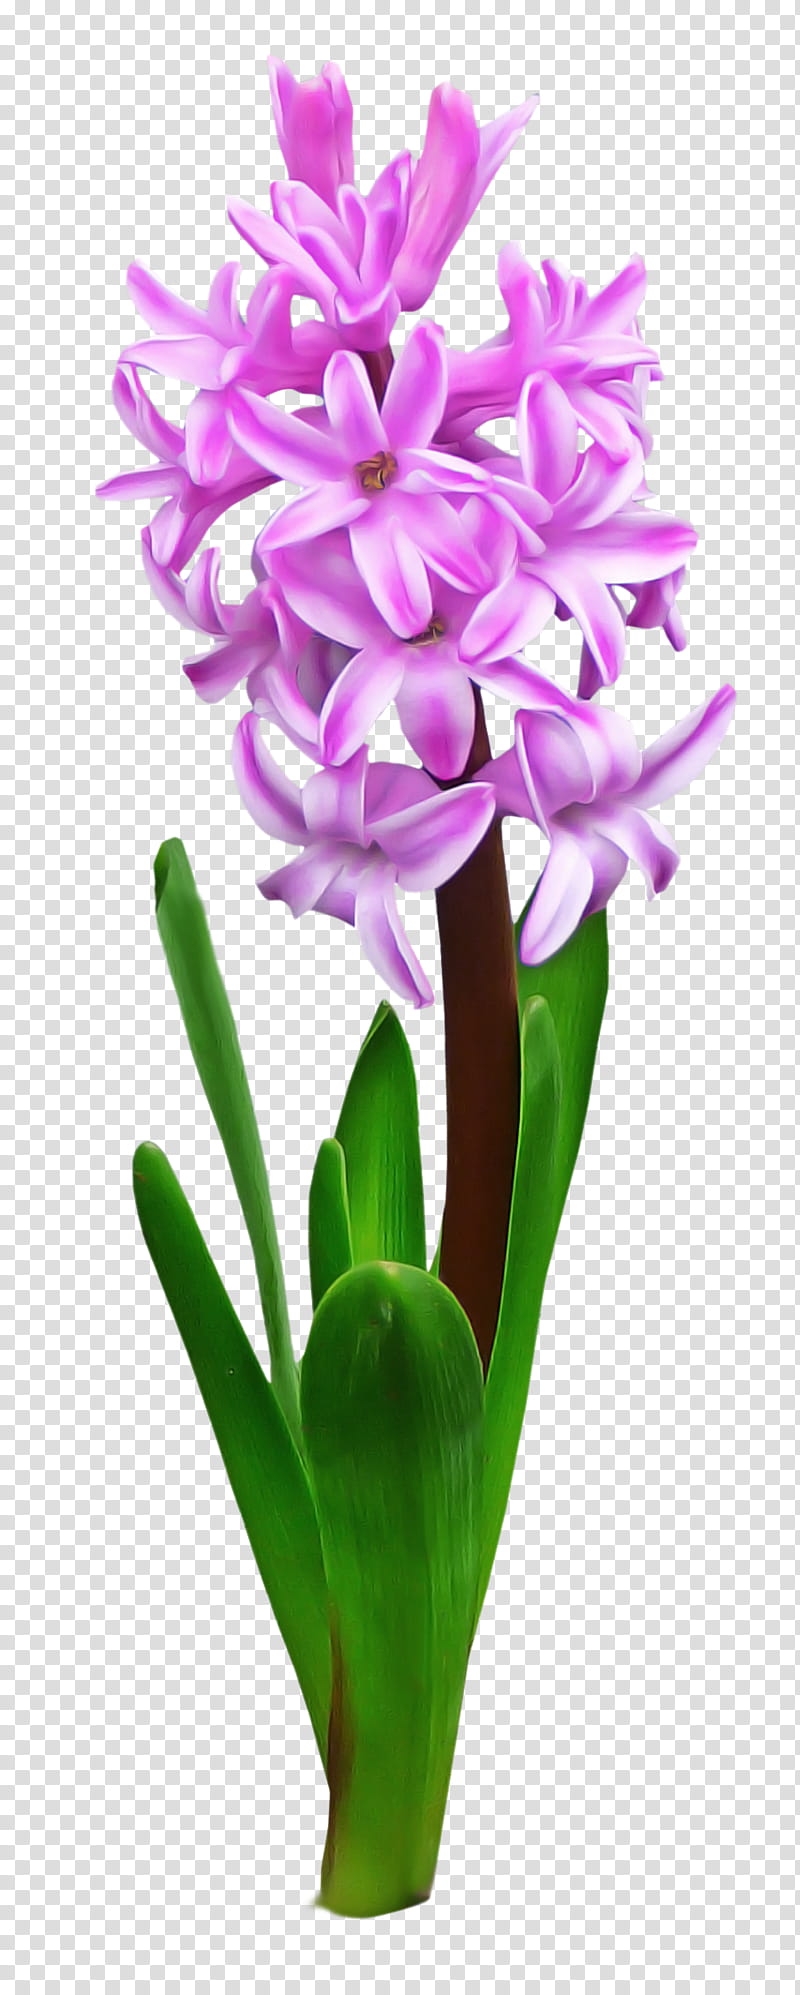 flower flowering plant petal plant hyacinth, Purple, Violet, Cut Flowers, Flowerpot, Perennial Plant transparent background PNG clipart